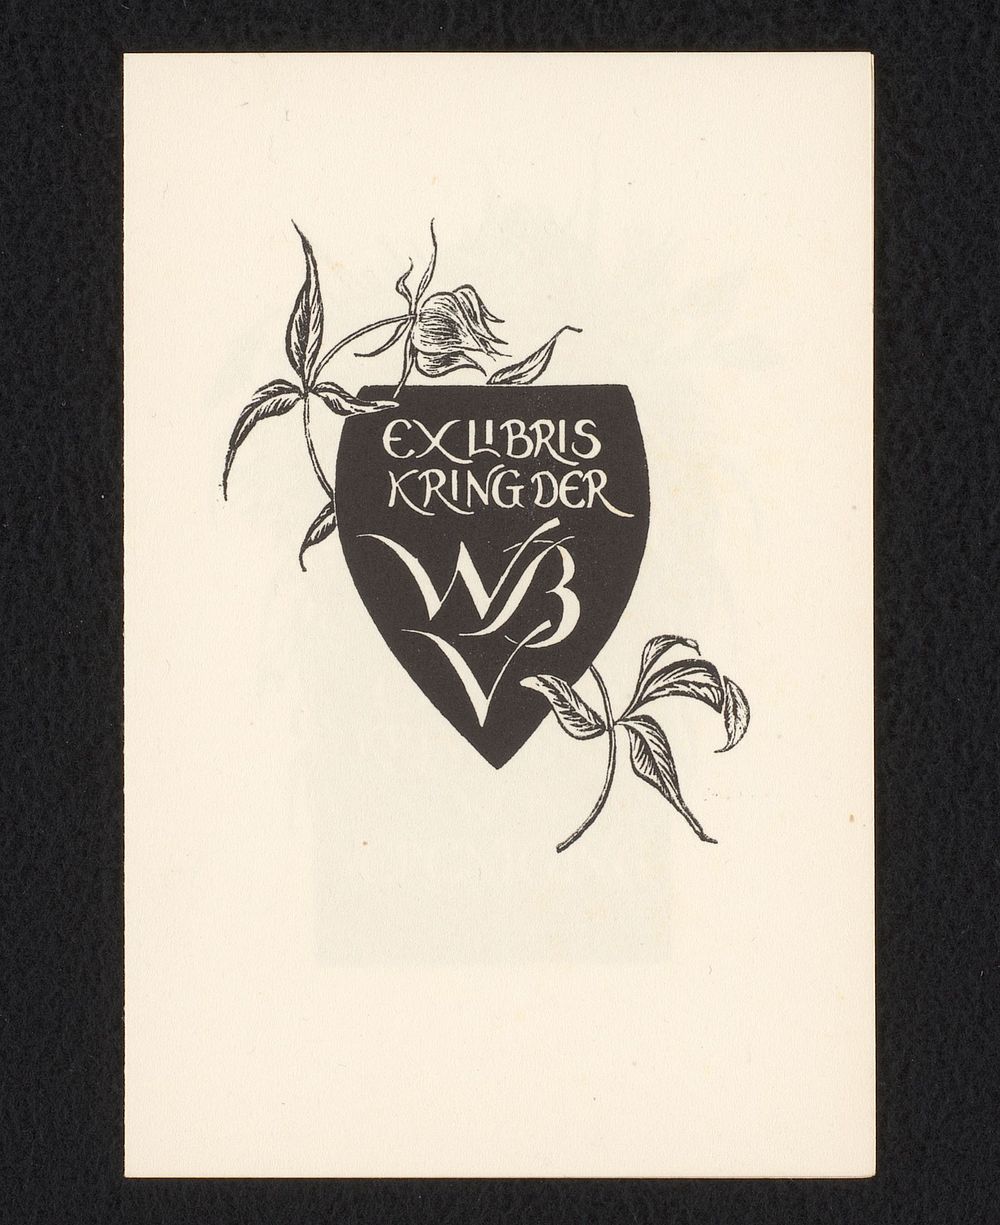 Lidmaatschapsbewijs van de Exlibriskring van de Wereldbibliotheek voor 1950 (in or before 1950) by Annemarie van Eck and…